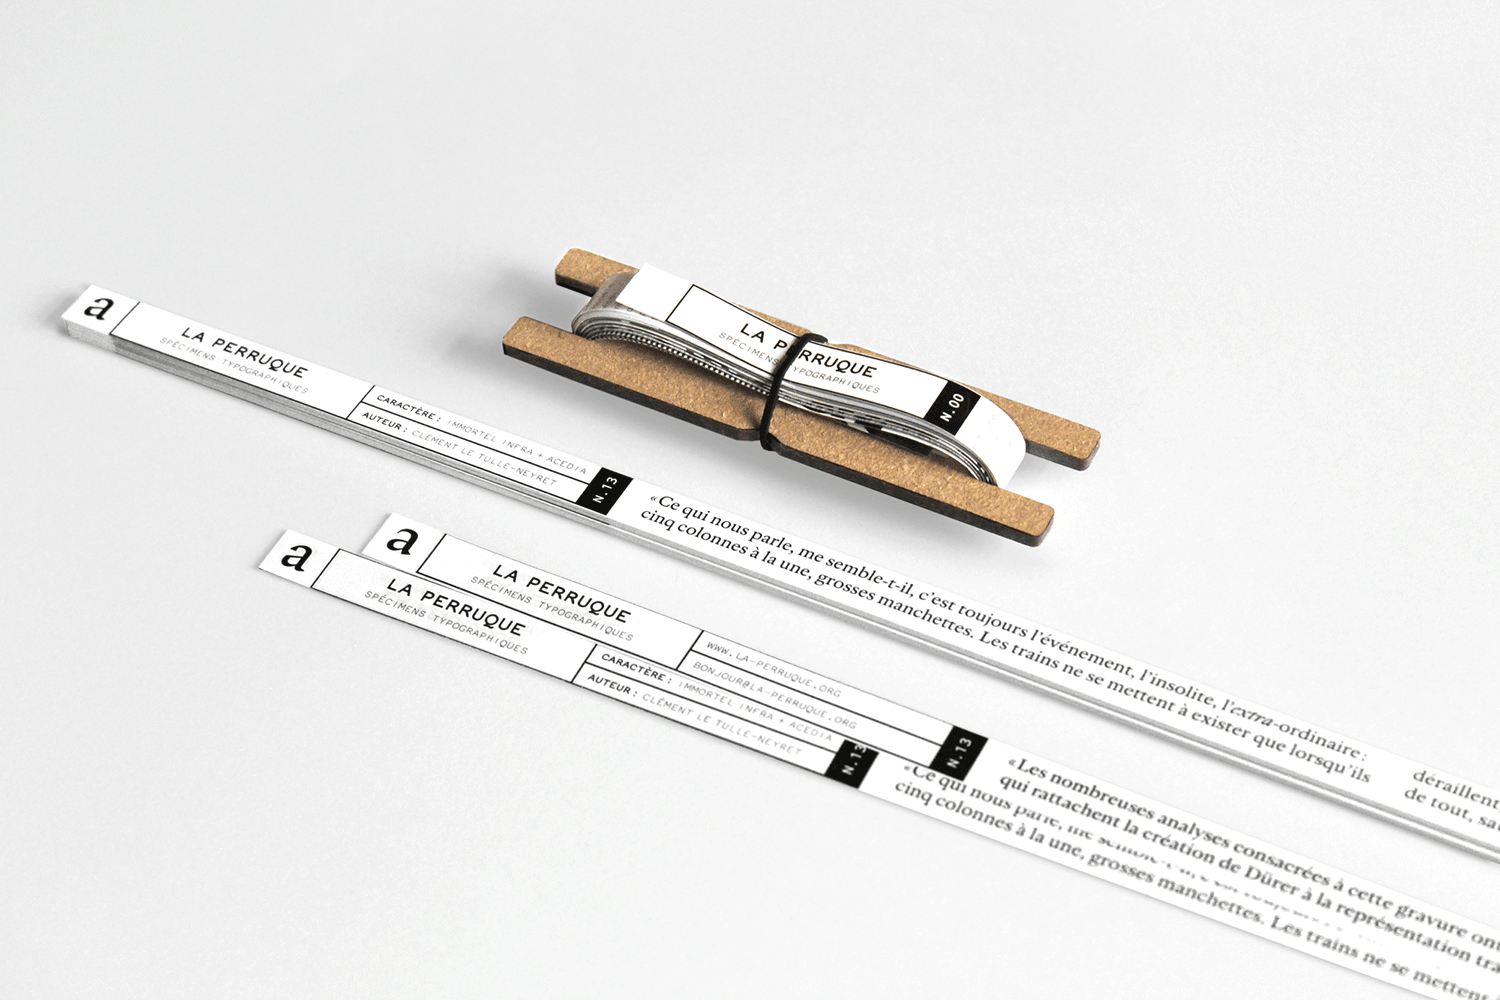 Image de spécimens typographiques de La Perruque. Ils sont imprimés sur des bandes très fines.